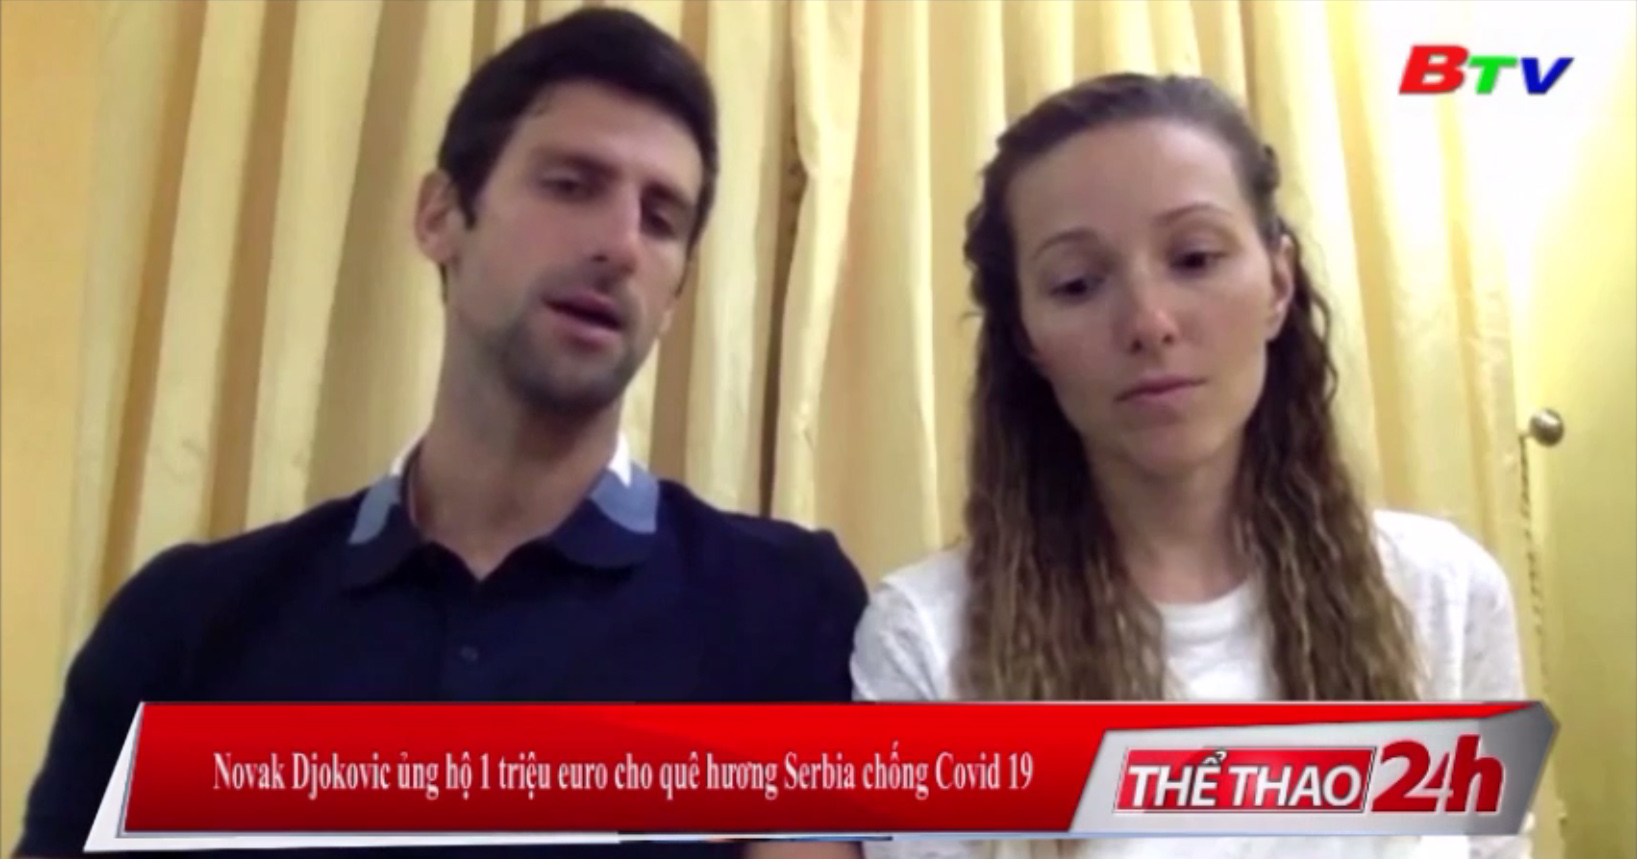 Novak Djokovic ủng hộ 1 triệu euro cho quê hương Serbia chống Covid-19